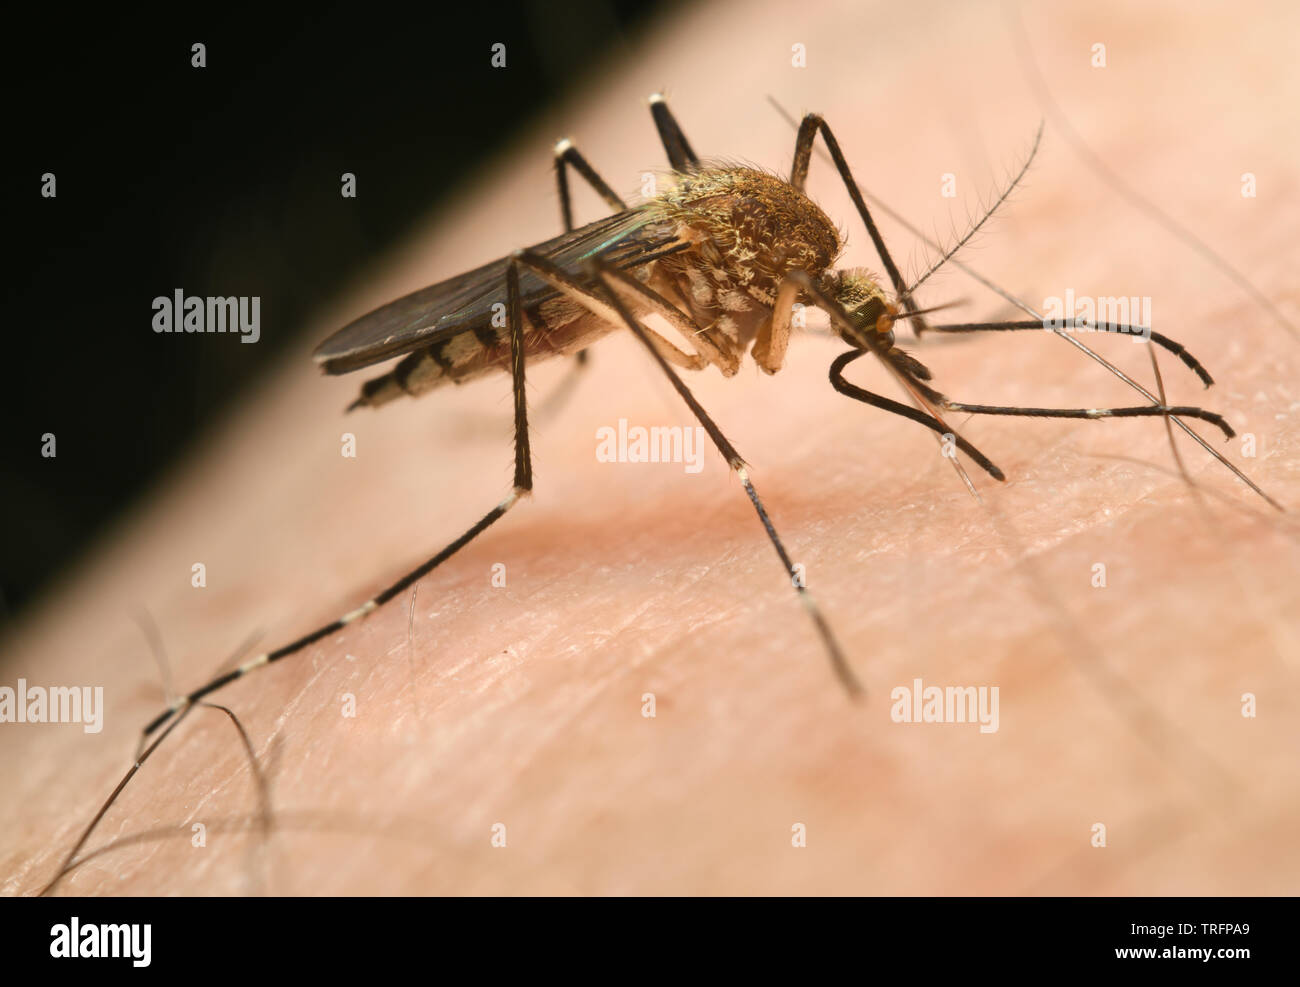 Nahaufnahme eines weiblichen Mücke Culex pipiens Durchstechen der menschlichen Haut mit Nadel wie Rüssel, eine Mahlzeit zu saugen Blut Stockfoto